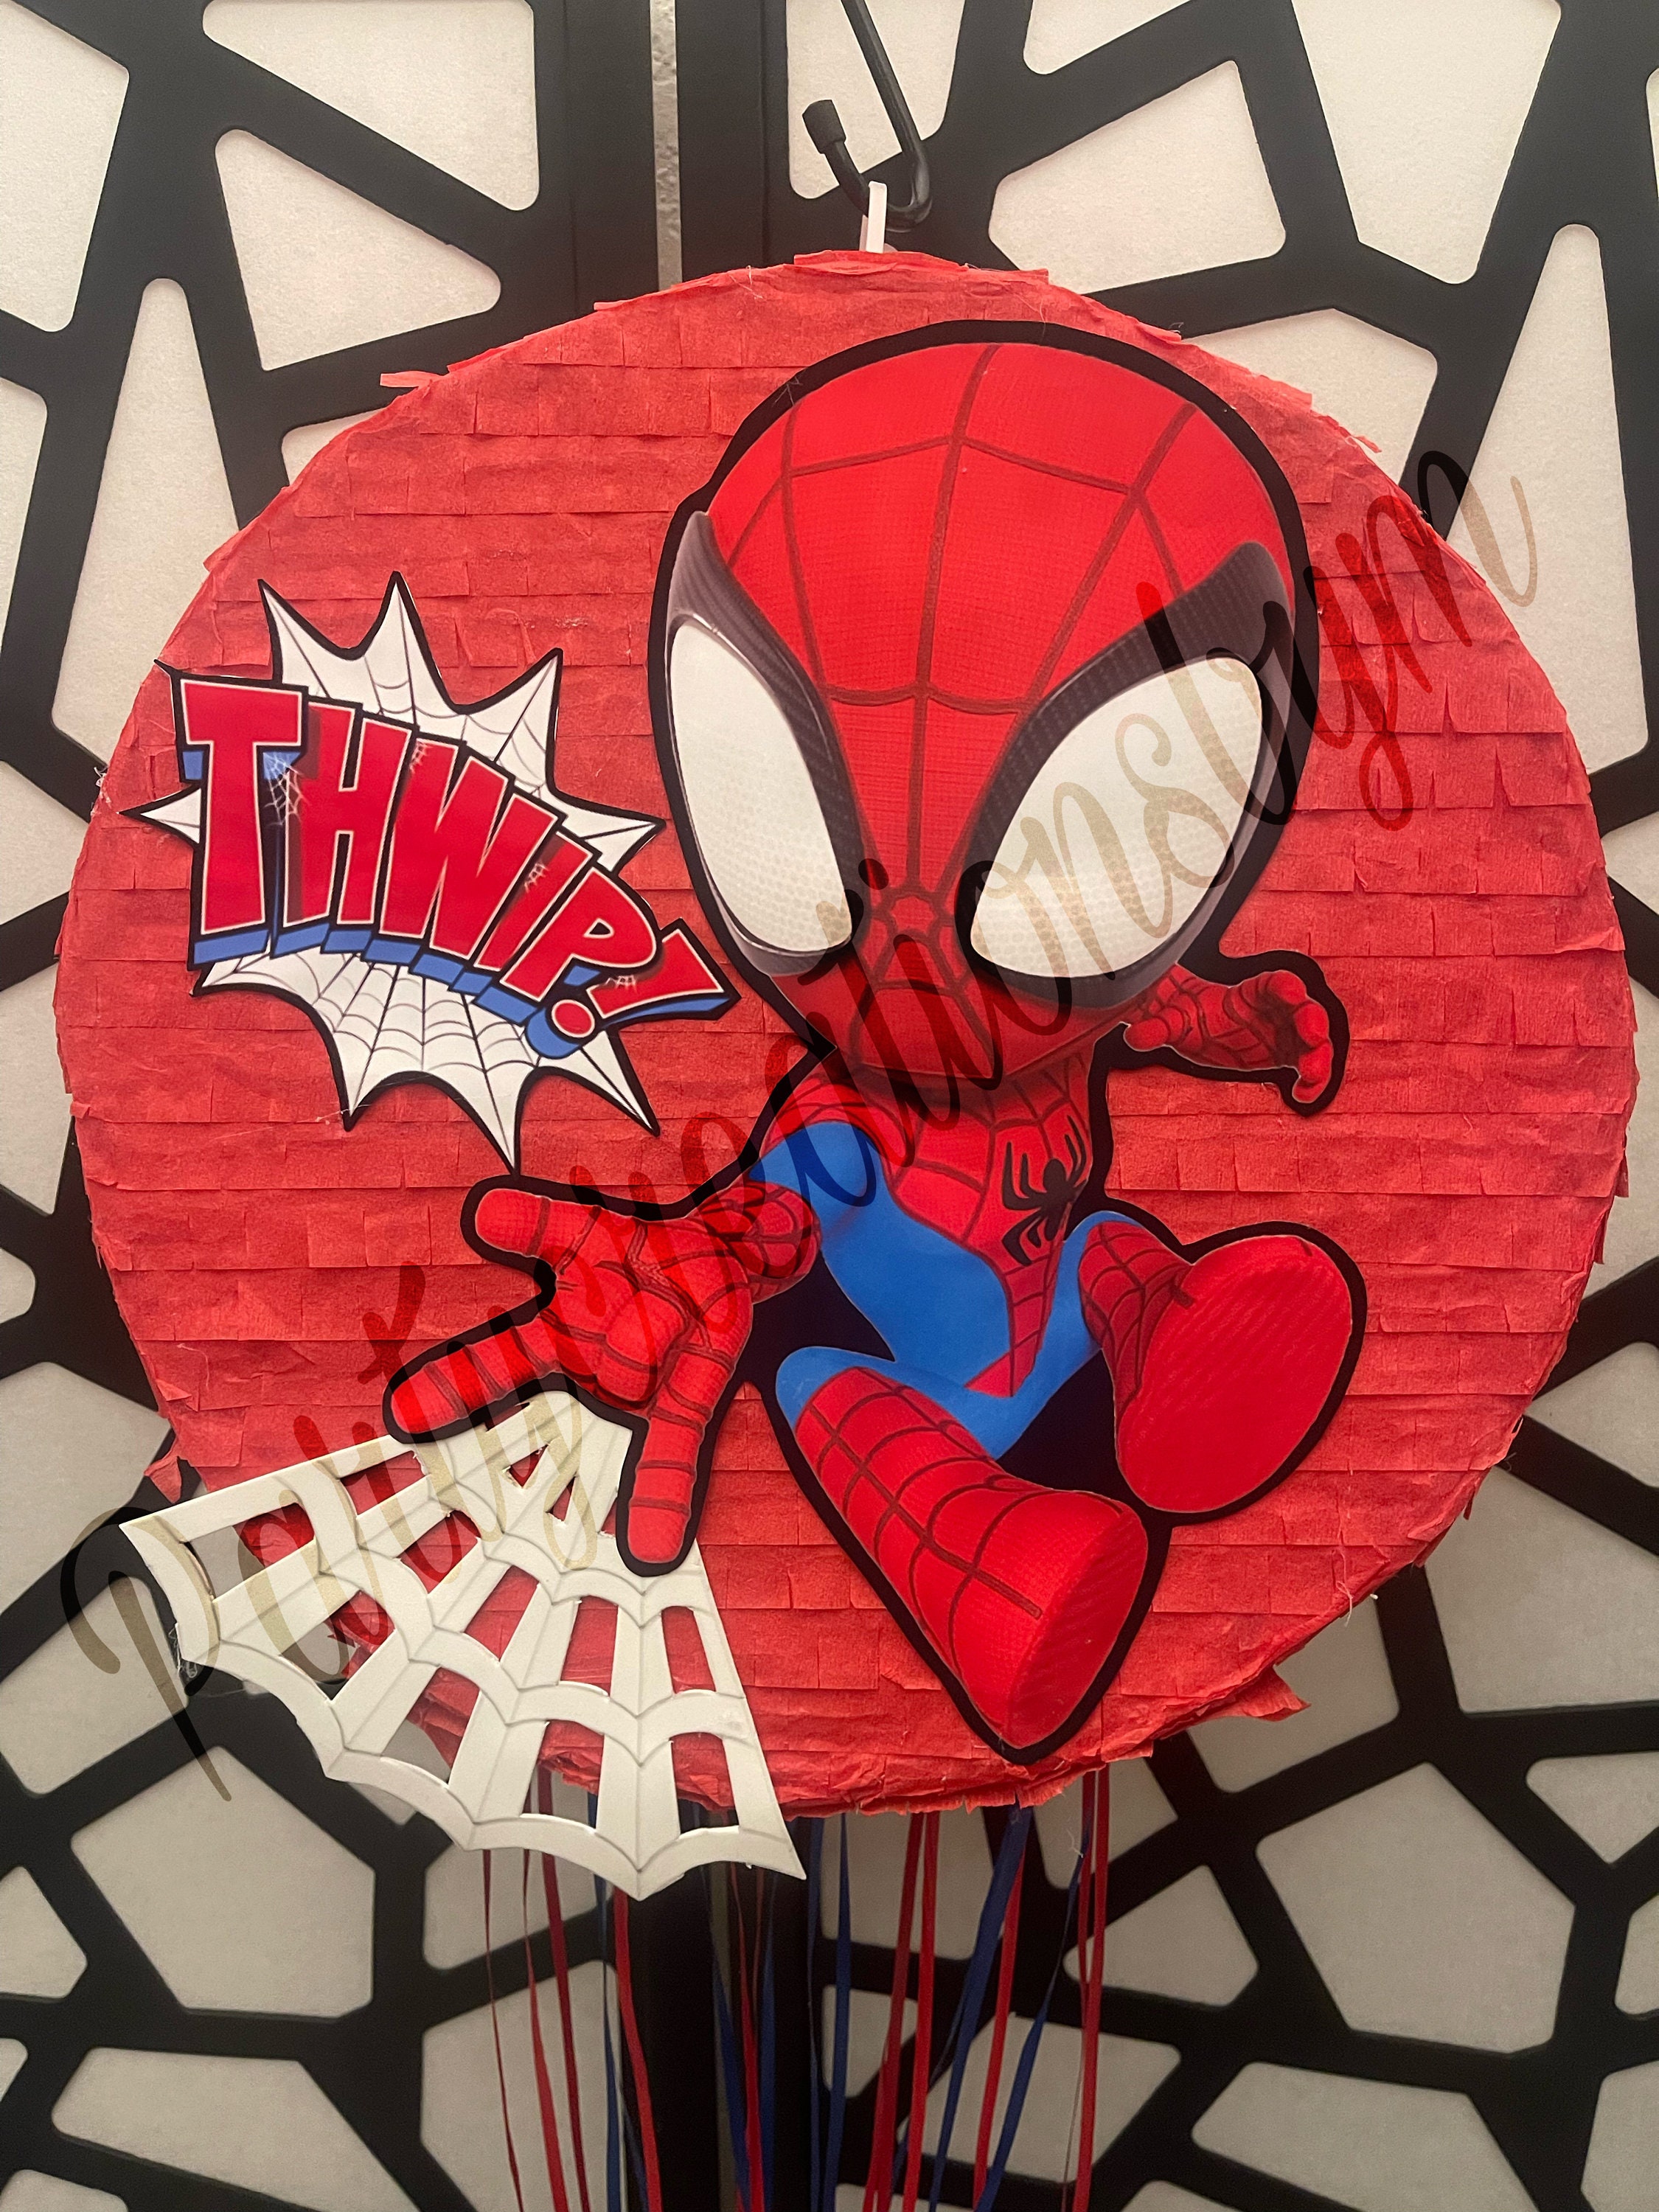 Increíble piñata de Spiderman, fiesta temática de Spiderman